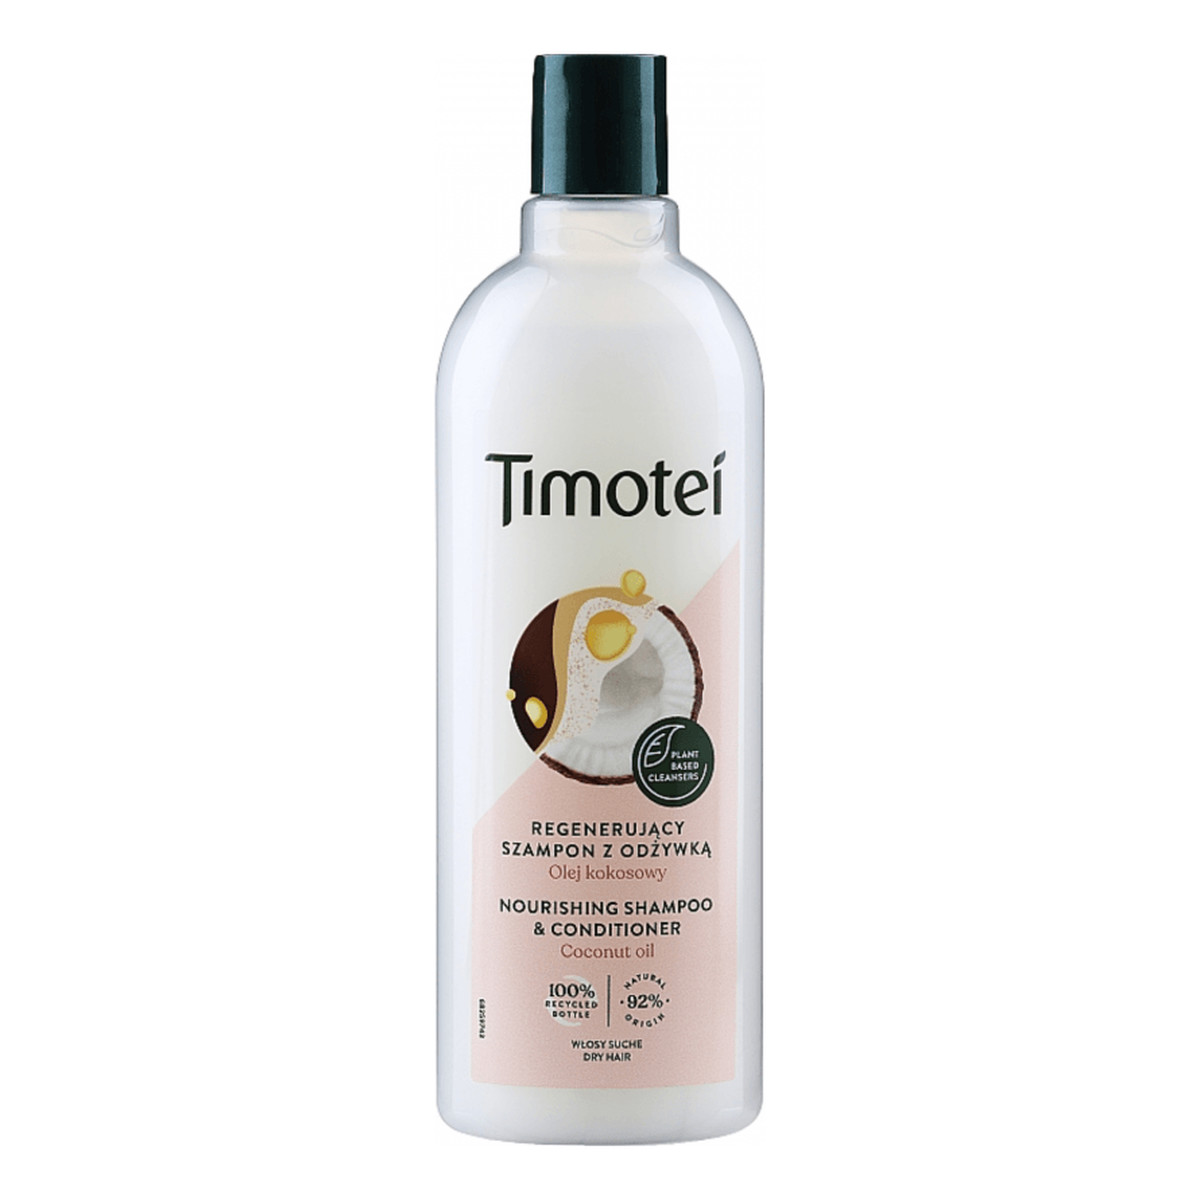 timotei intensywna odbudowa szampon do włosów 400ml